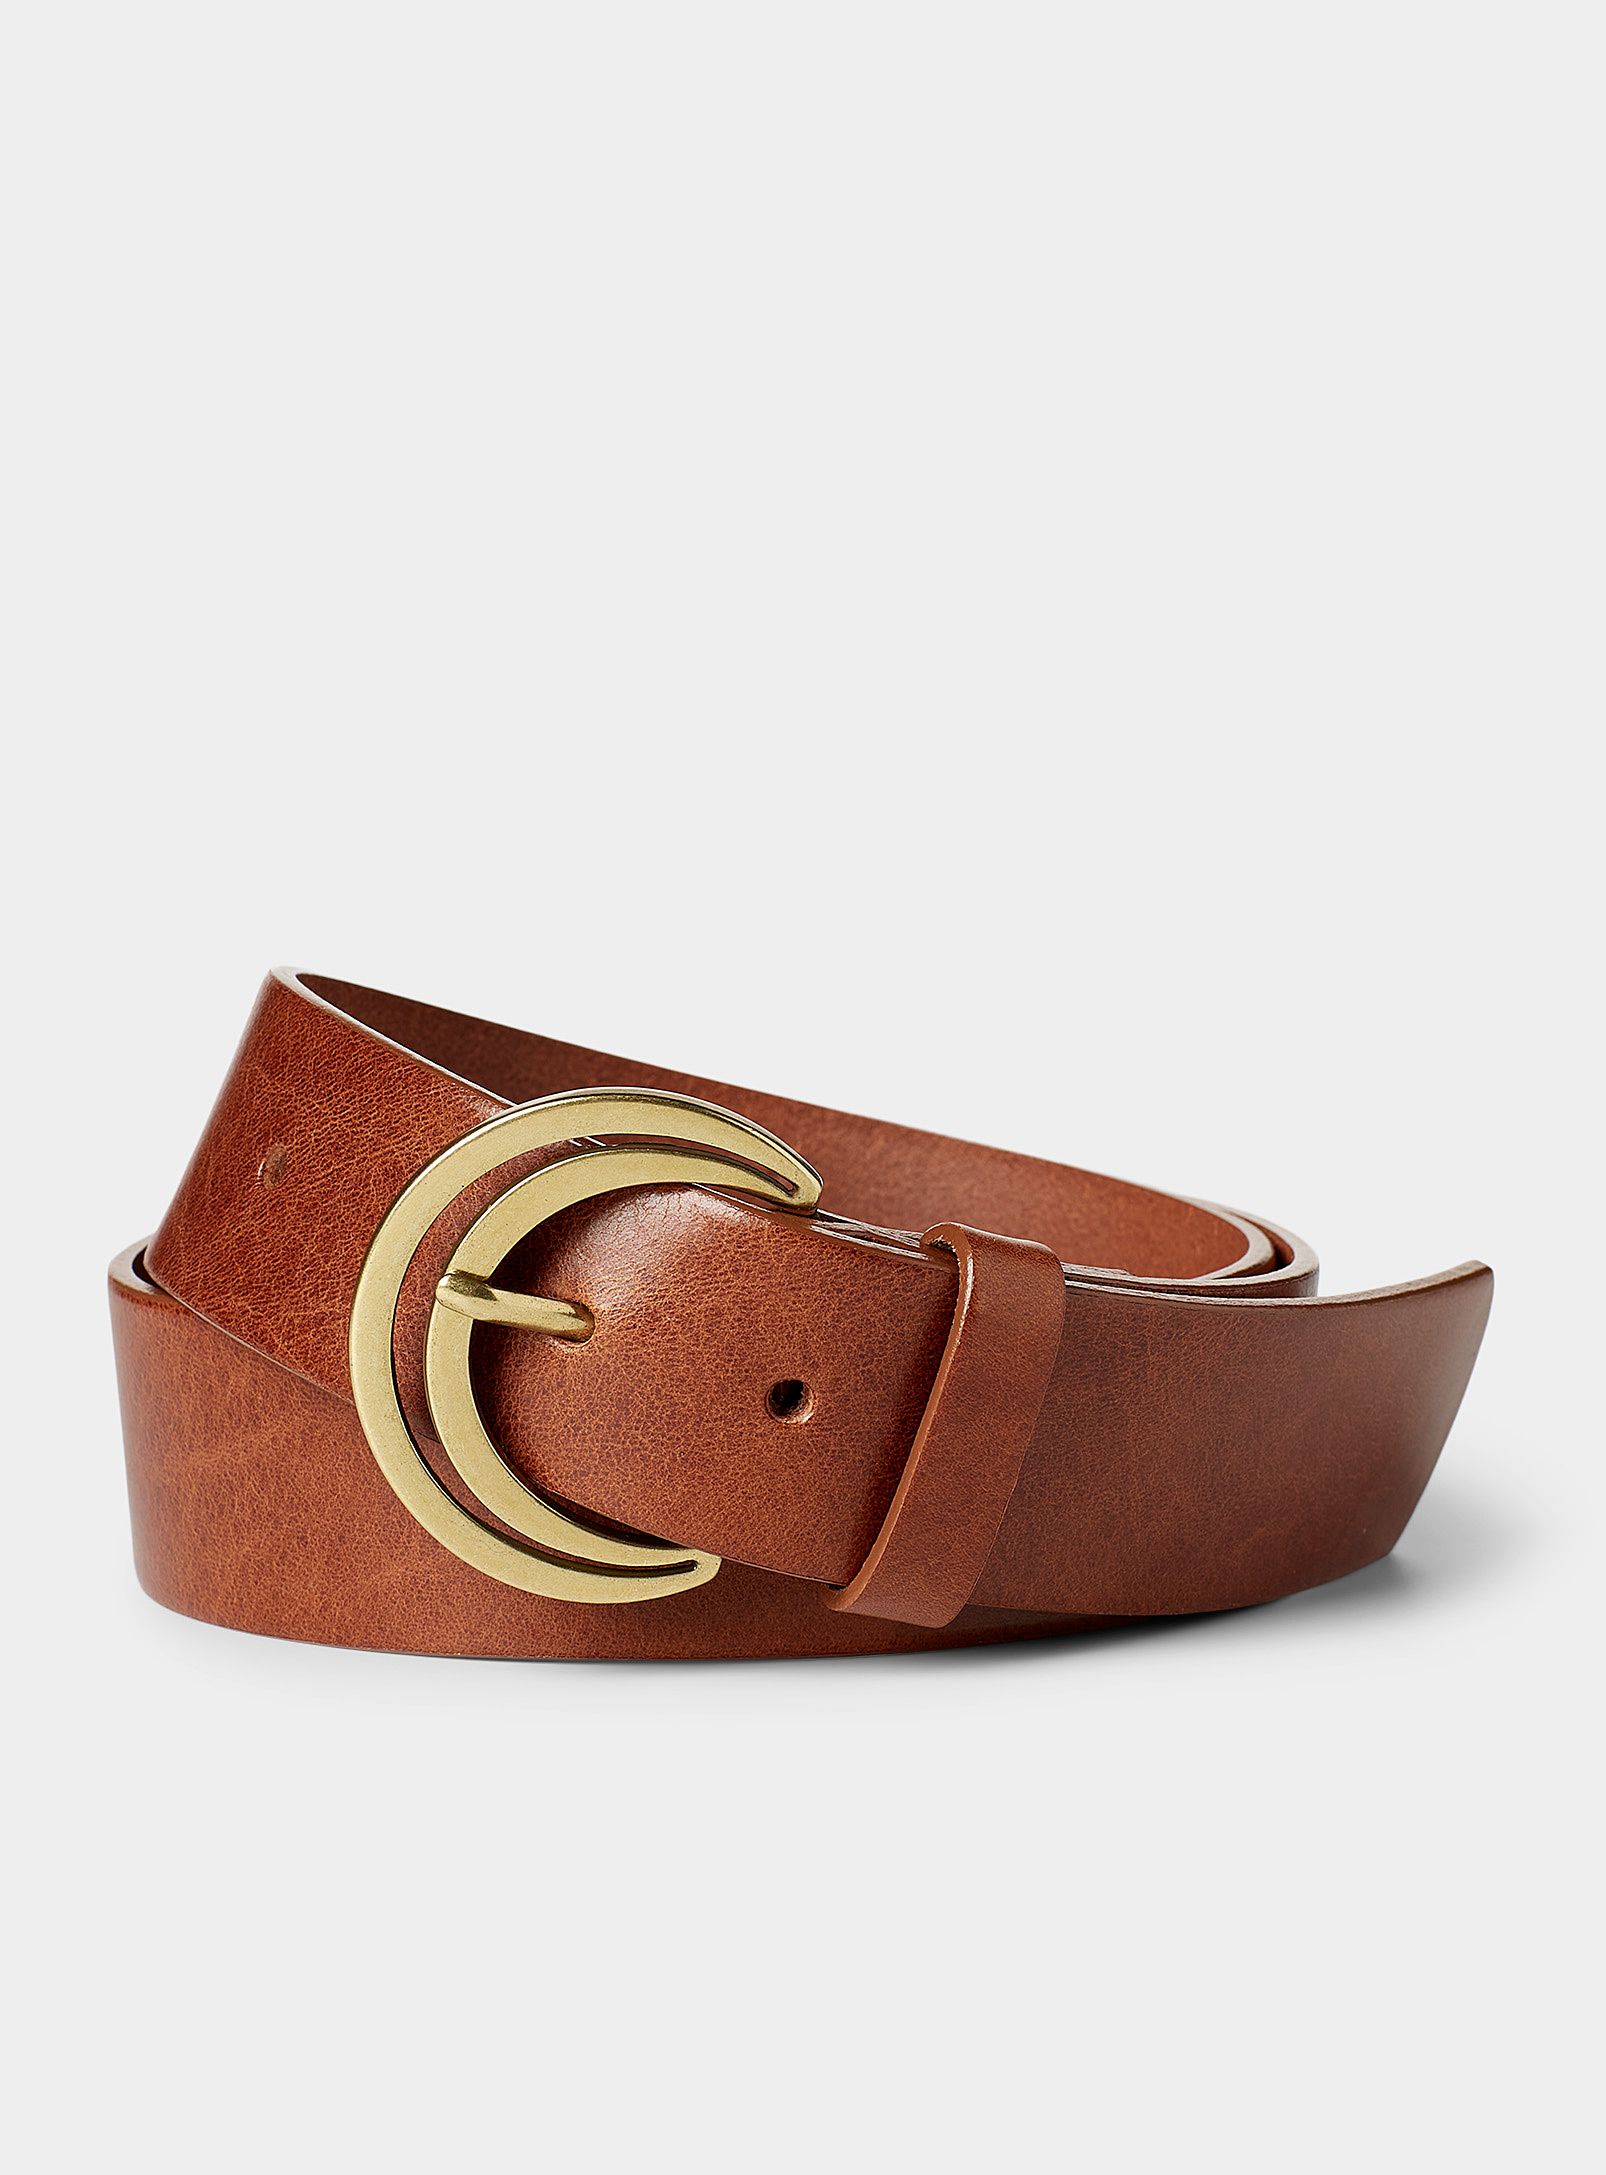 Simons - Women's Wide lunar-buckle leather belt